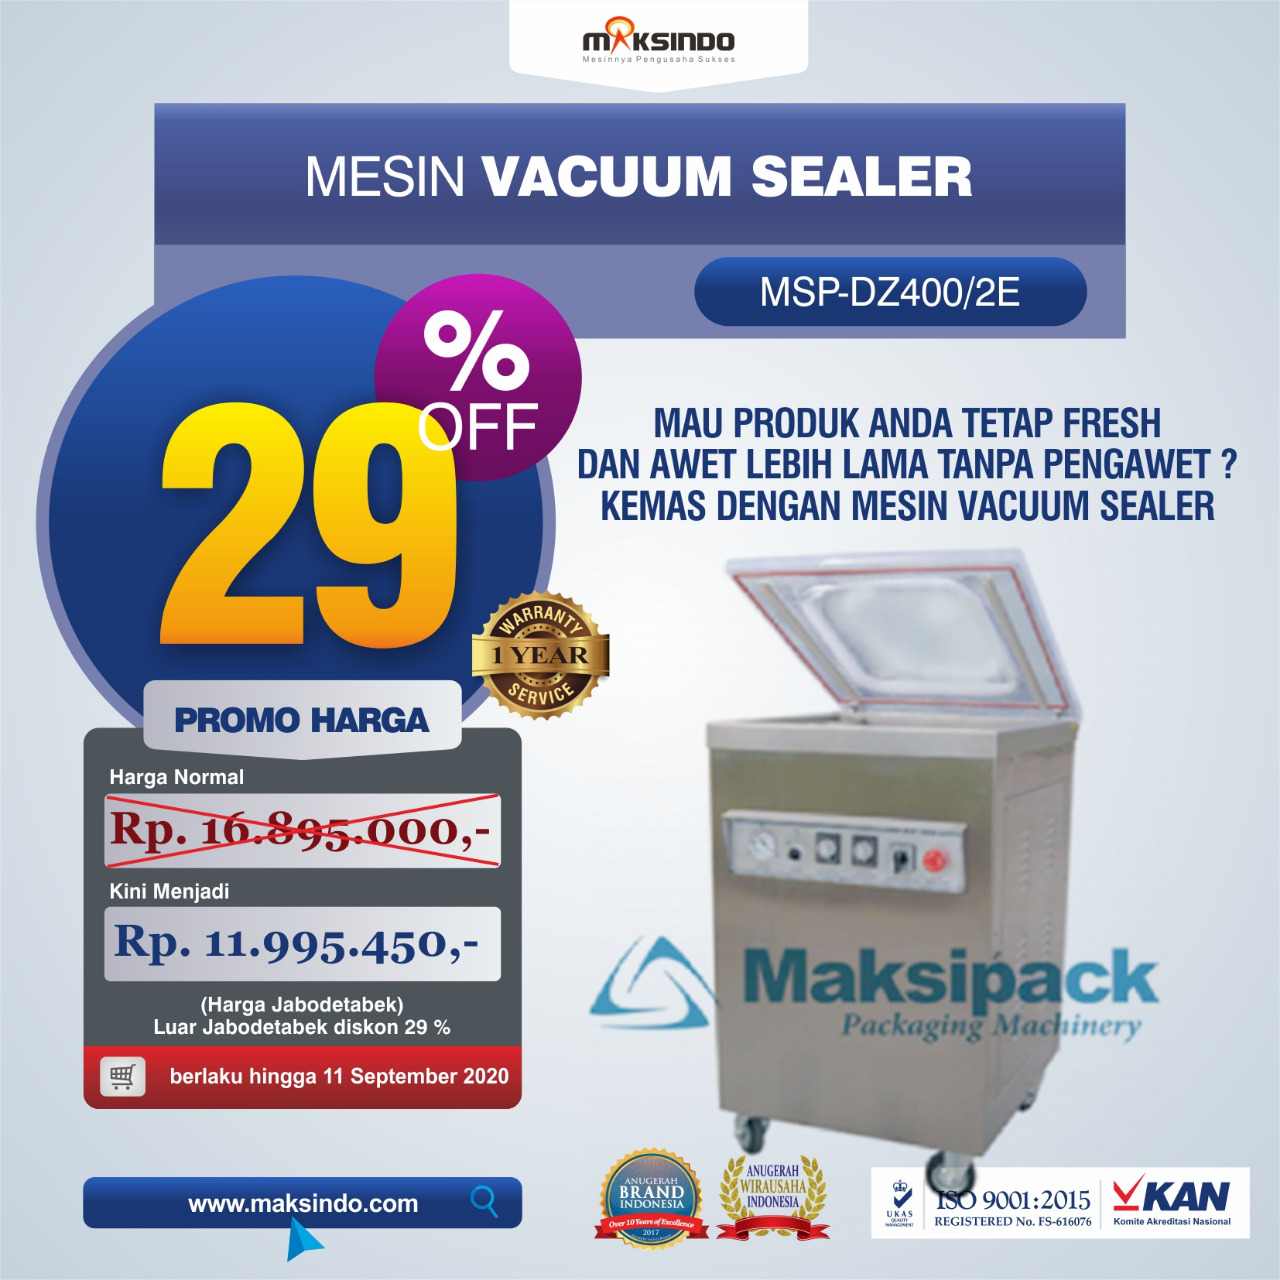 Jual Mesin Vacuum Sealer (MSP-DZ400/2E) di Banjarmasin